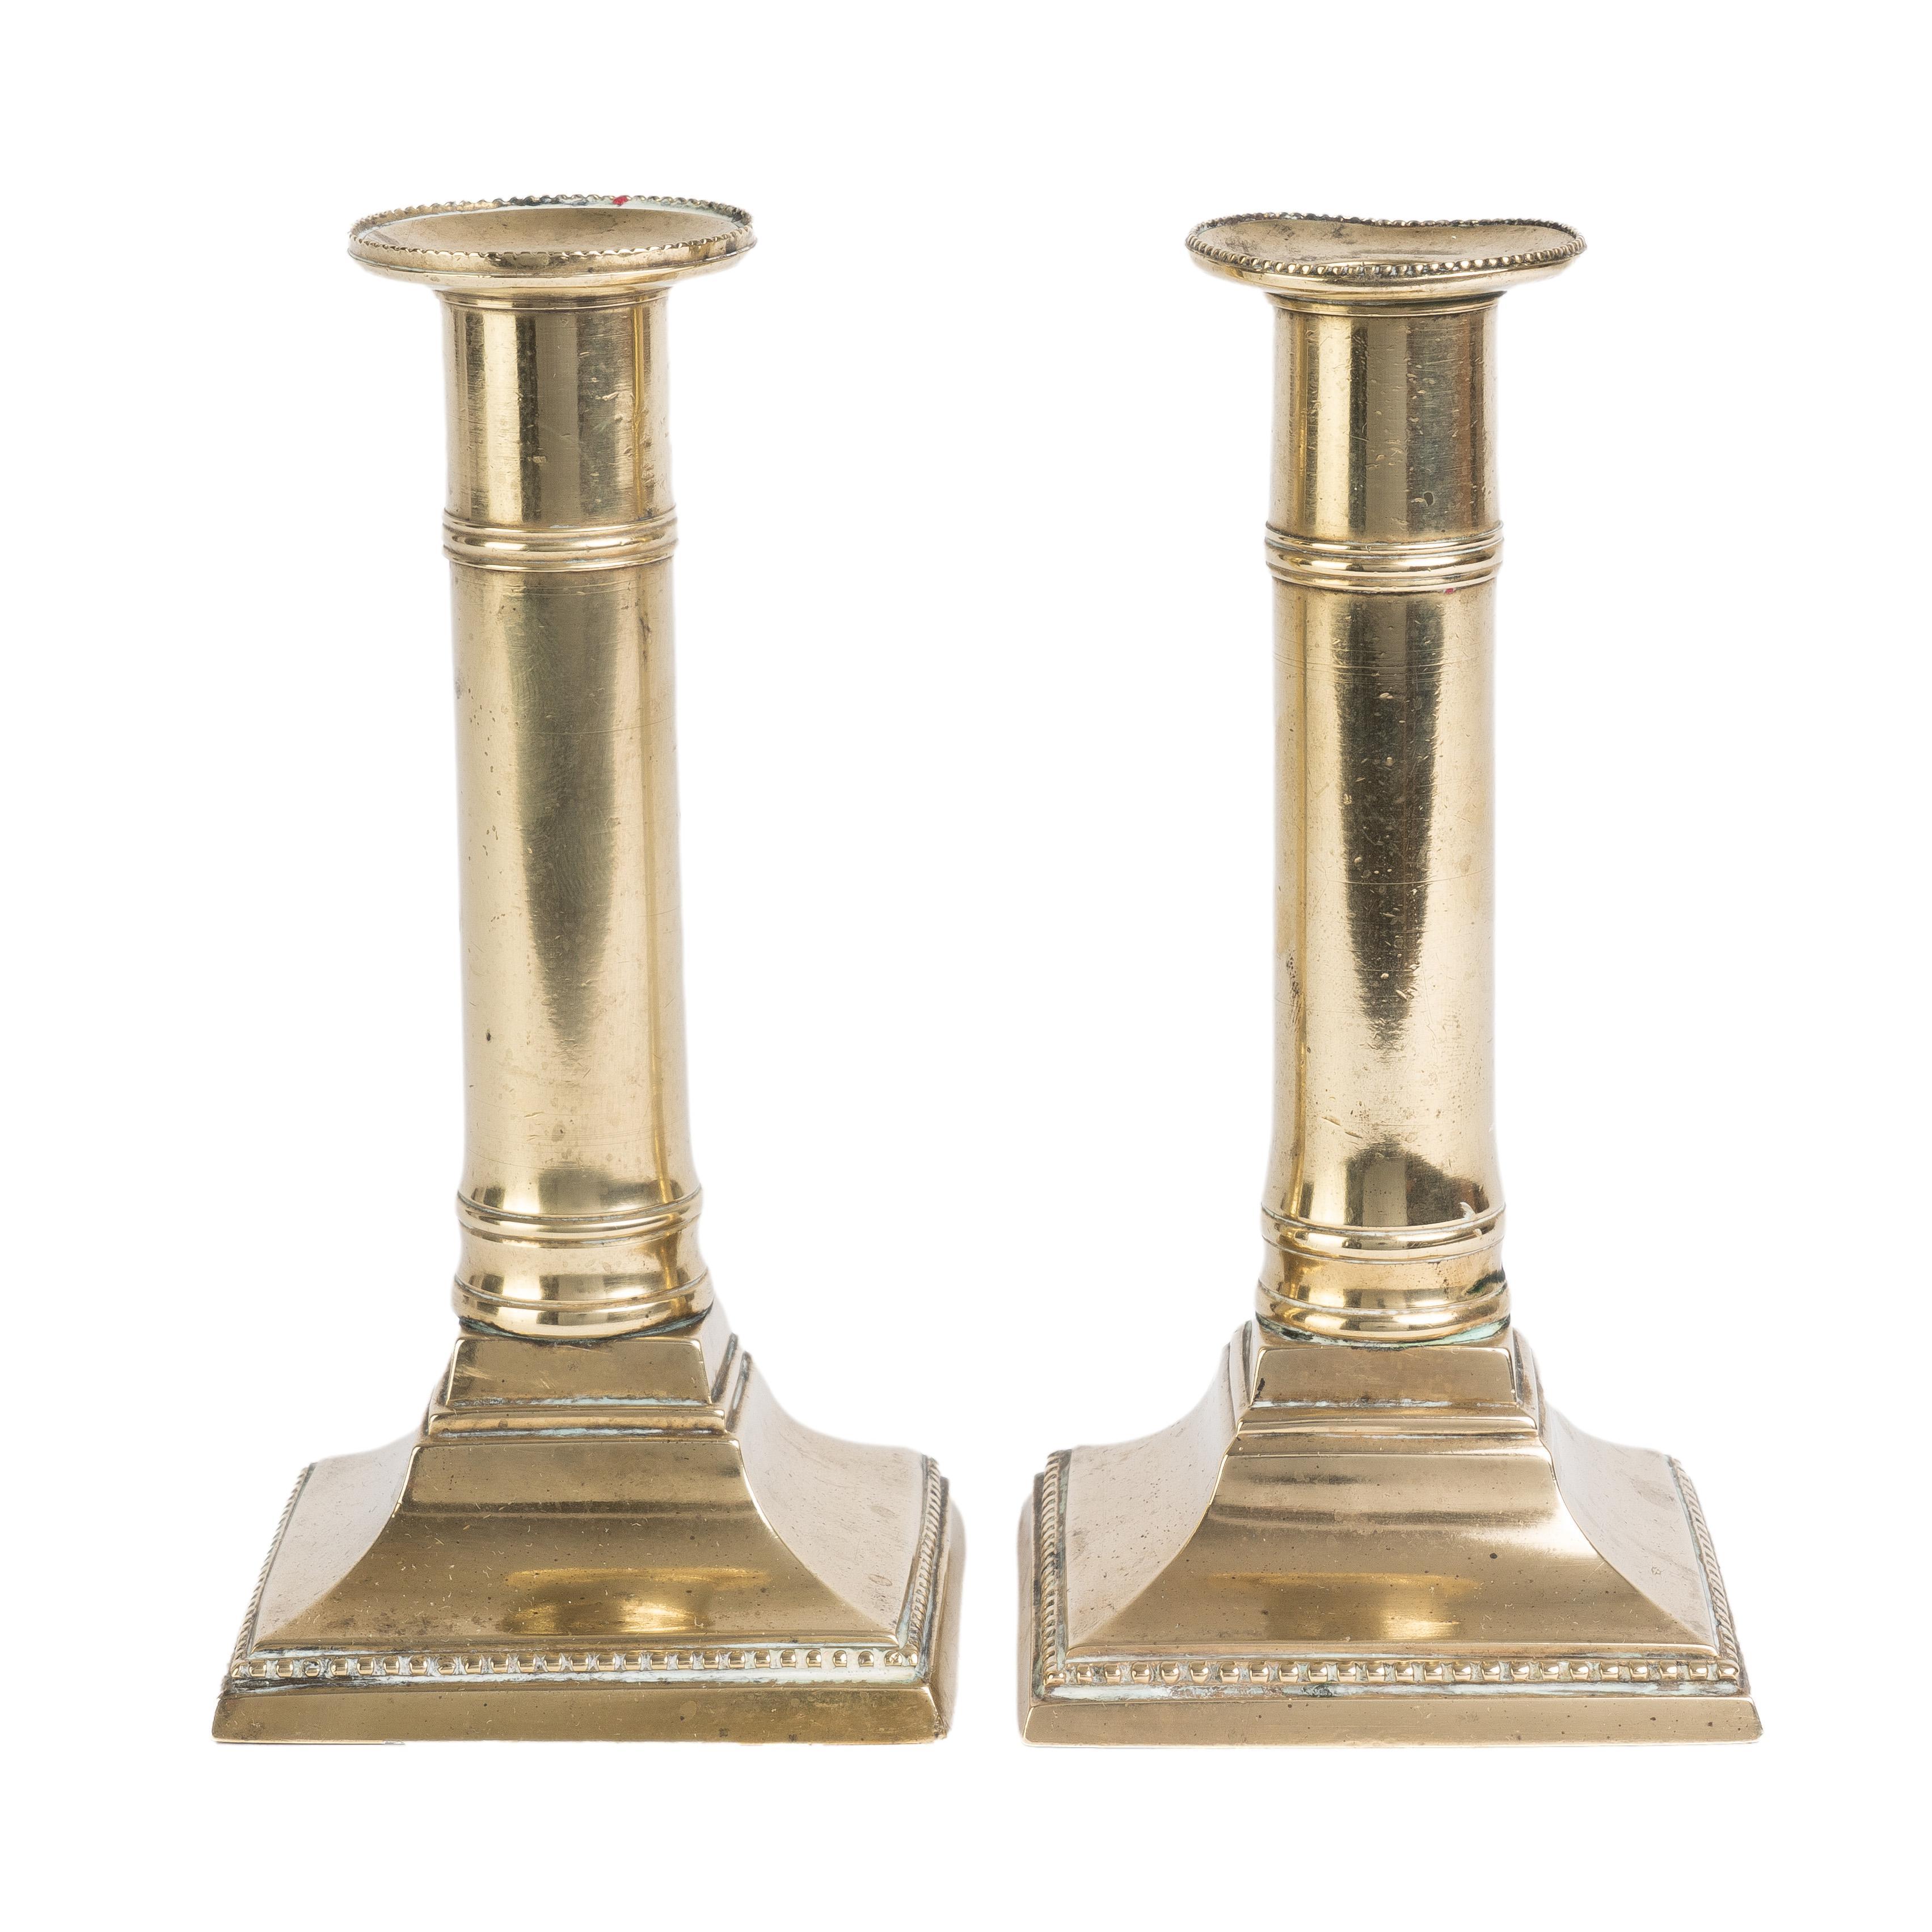 Paire de chandeliers à colonne en laiton coulé sur une base carrée équipée d'un éjecteur de bougie à poussoir interne. Le bord du bobesh et la base sont décorés d'une bordure finement perlée.

Angleterre, vers 1810.